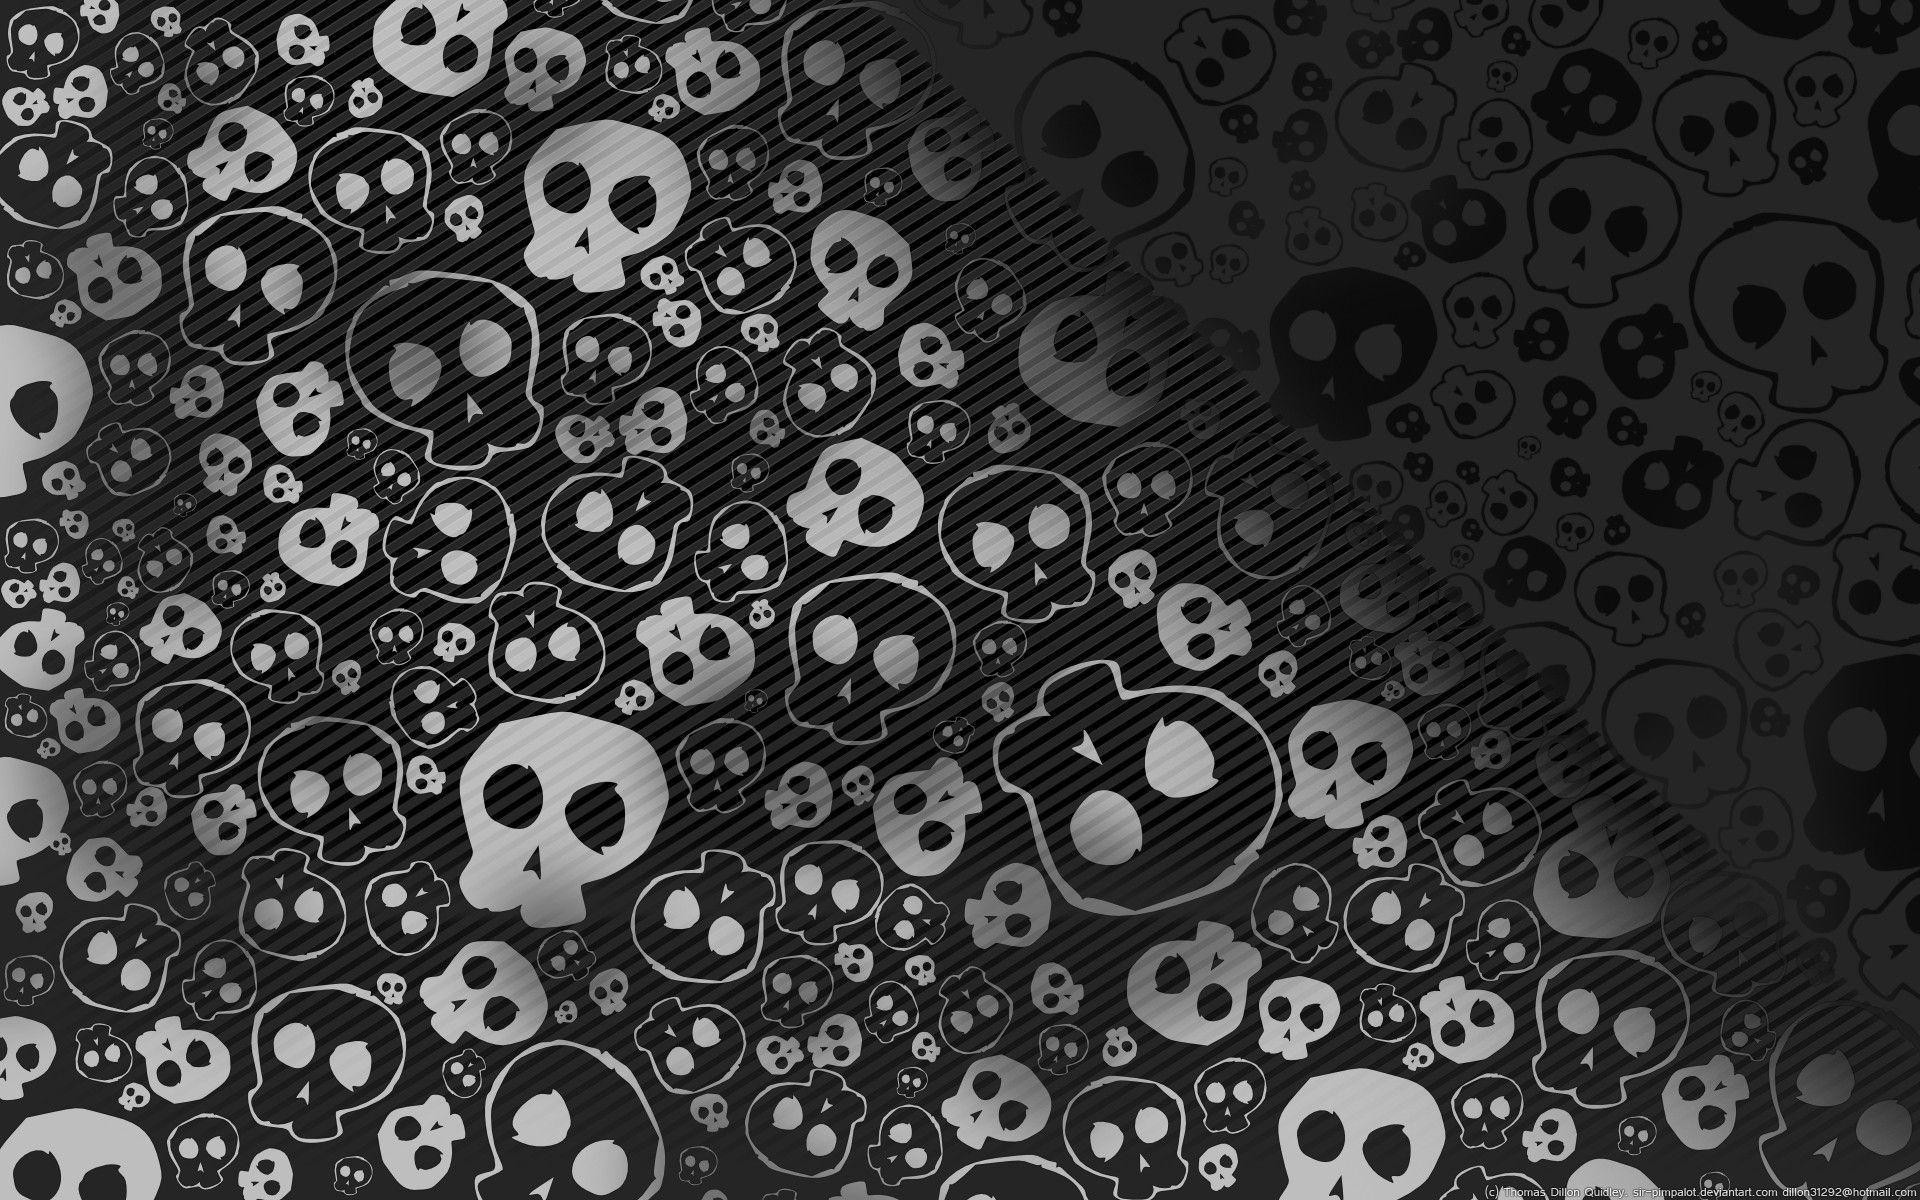 Black and White Skulls Wallpaper (59+ images)